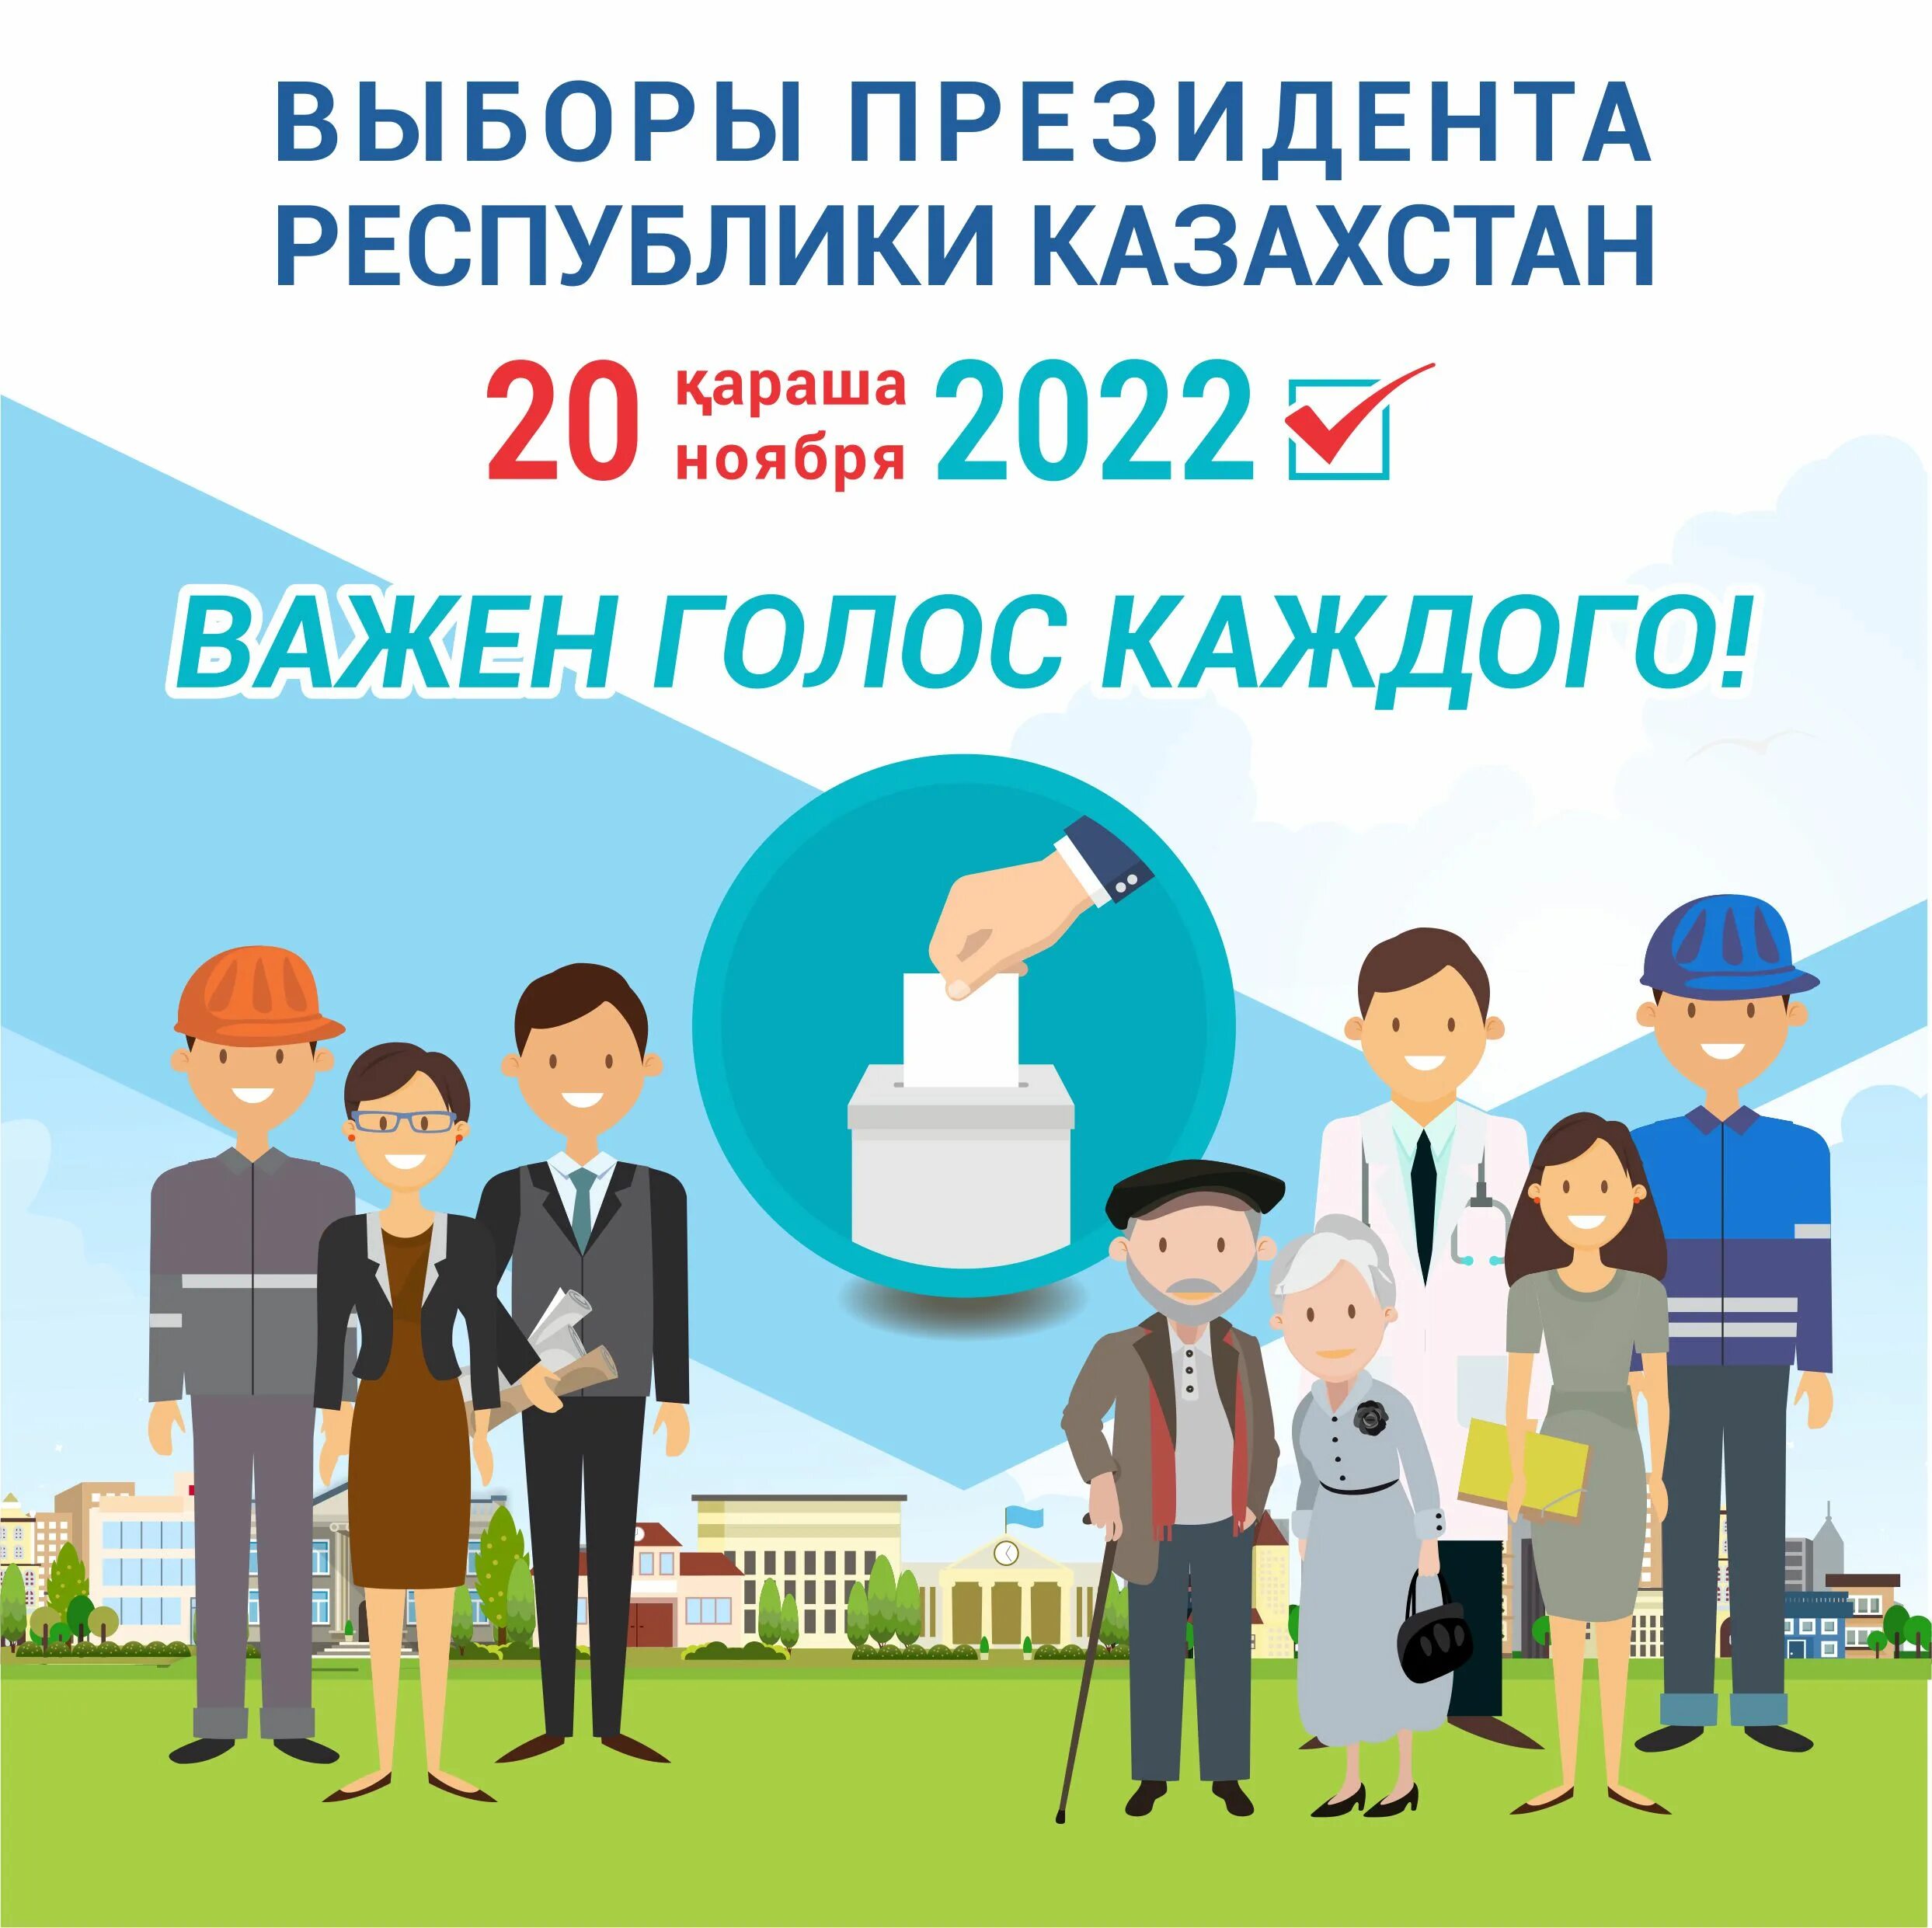 20 ноября 2020 г. Выборы президента Казахстана. Выборы в Казахстане в 2022. Президентские выборы в Казахстане 2022.